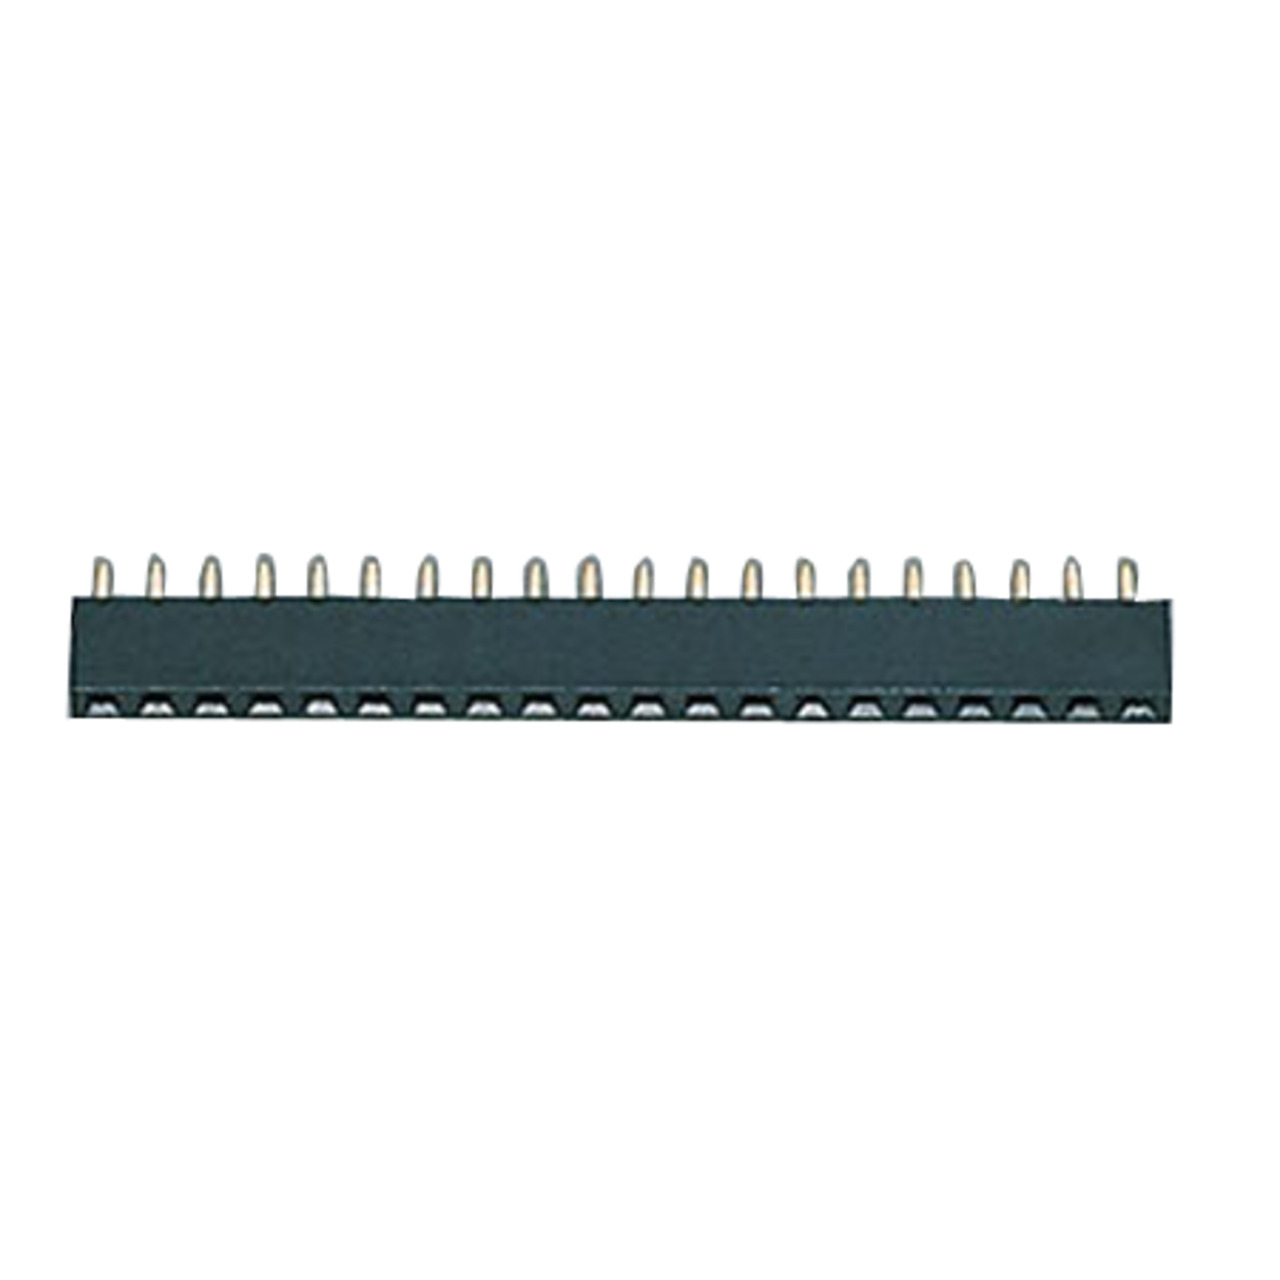 Buchsenleiste- 1x 32-polig- Krperhhe 4-2 mm- gerade- trennbar- gedrehte Kontakte unter Komponenten